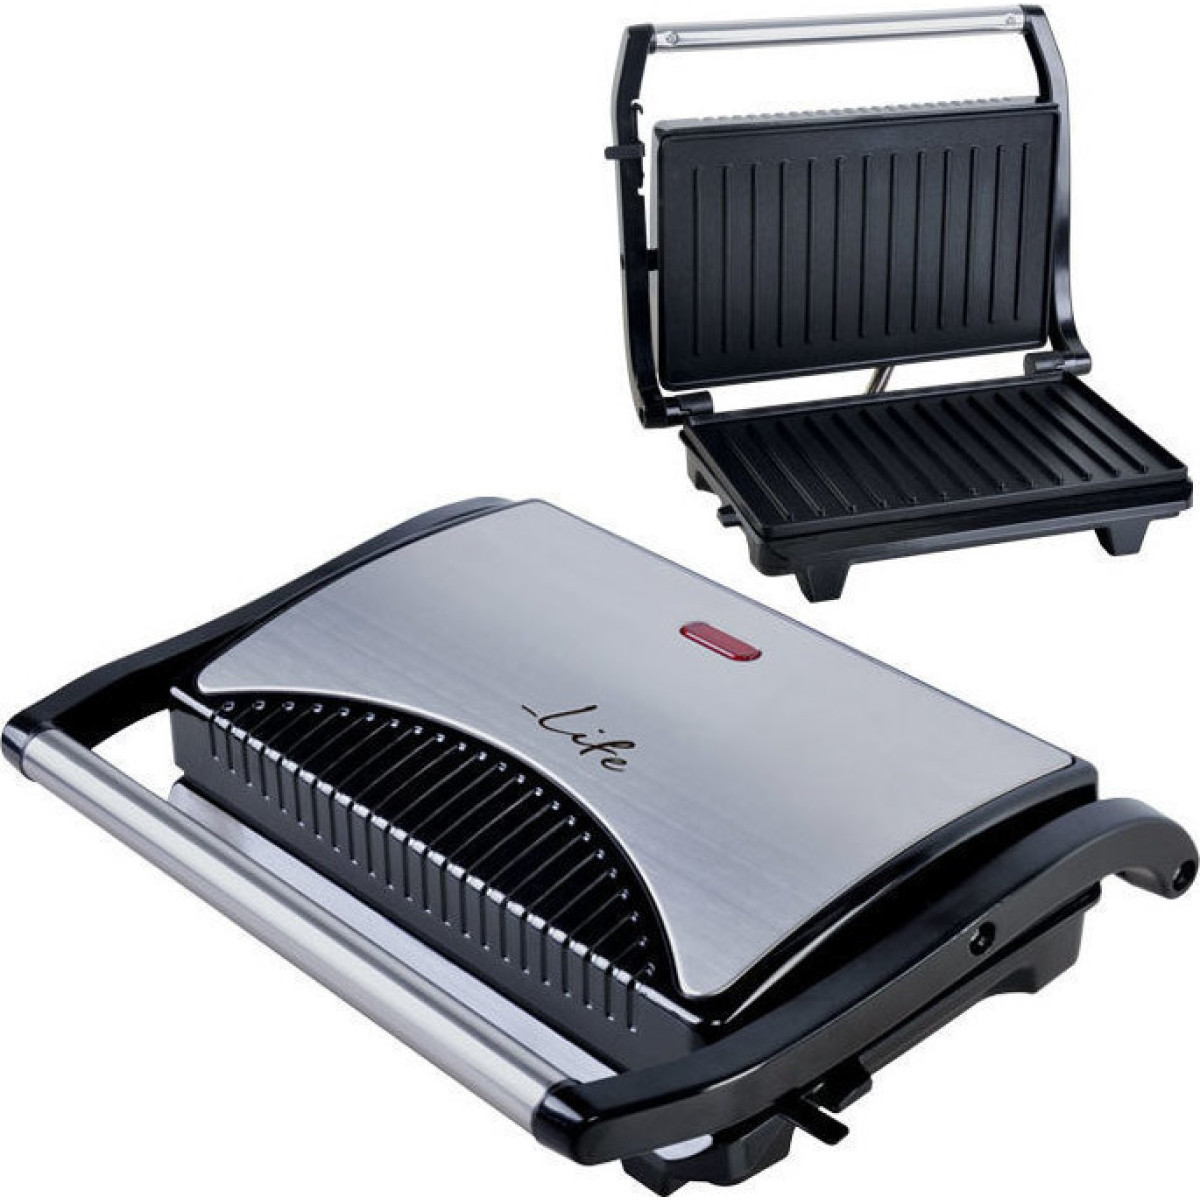 Τοστιέρα Life STG-100 inox με grill πλάκες 700W Τοστιέρες